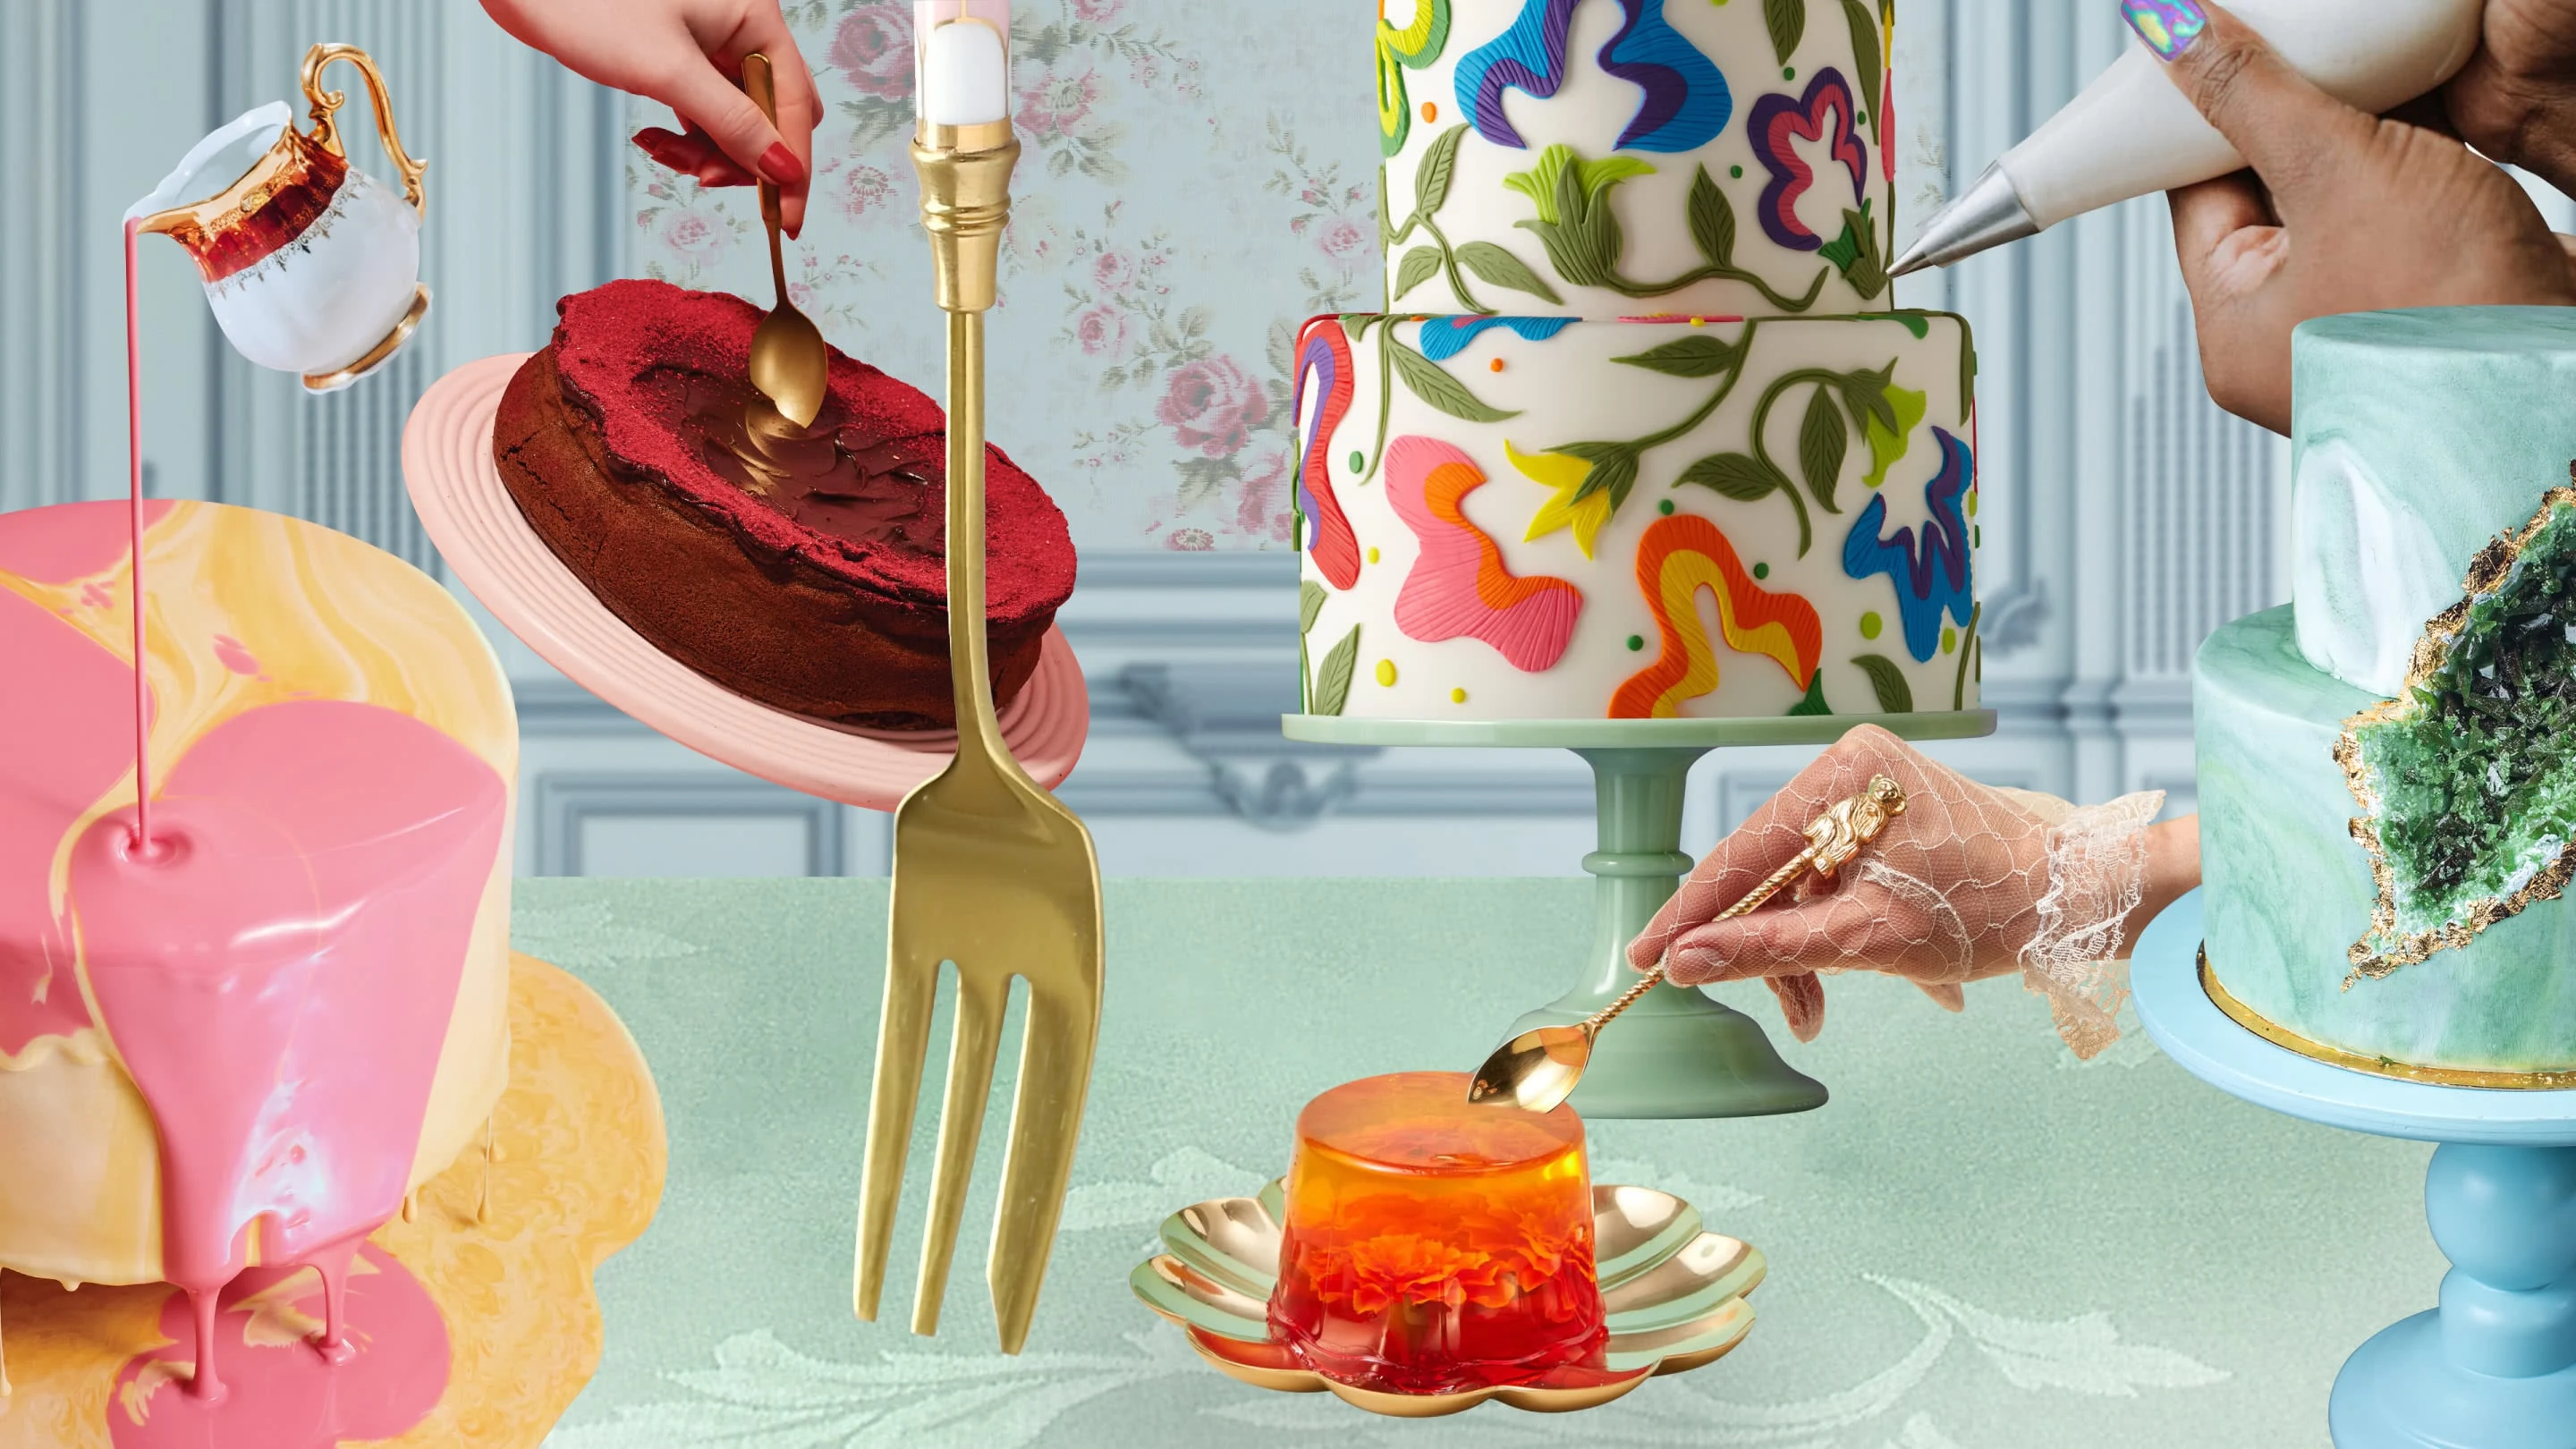 Collage de gâteaux. Gâteau rond jaune avec un pot versant du glaçage rose dessus. Red velvet cake avec un cœur au chocolat. Gâteau à deux étages avec des fleurs en fondant. Gâteau en gelée orange. Gâteau vert façon géode. 